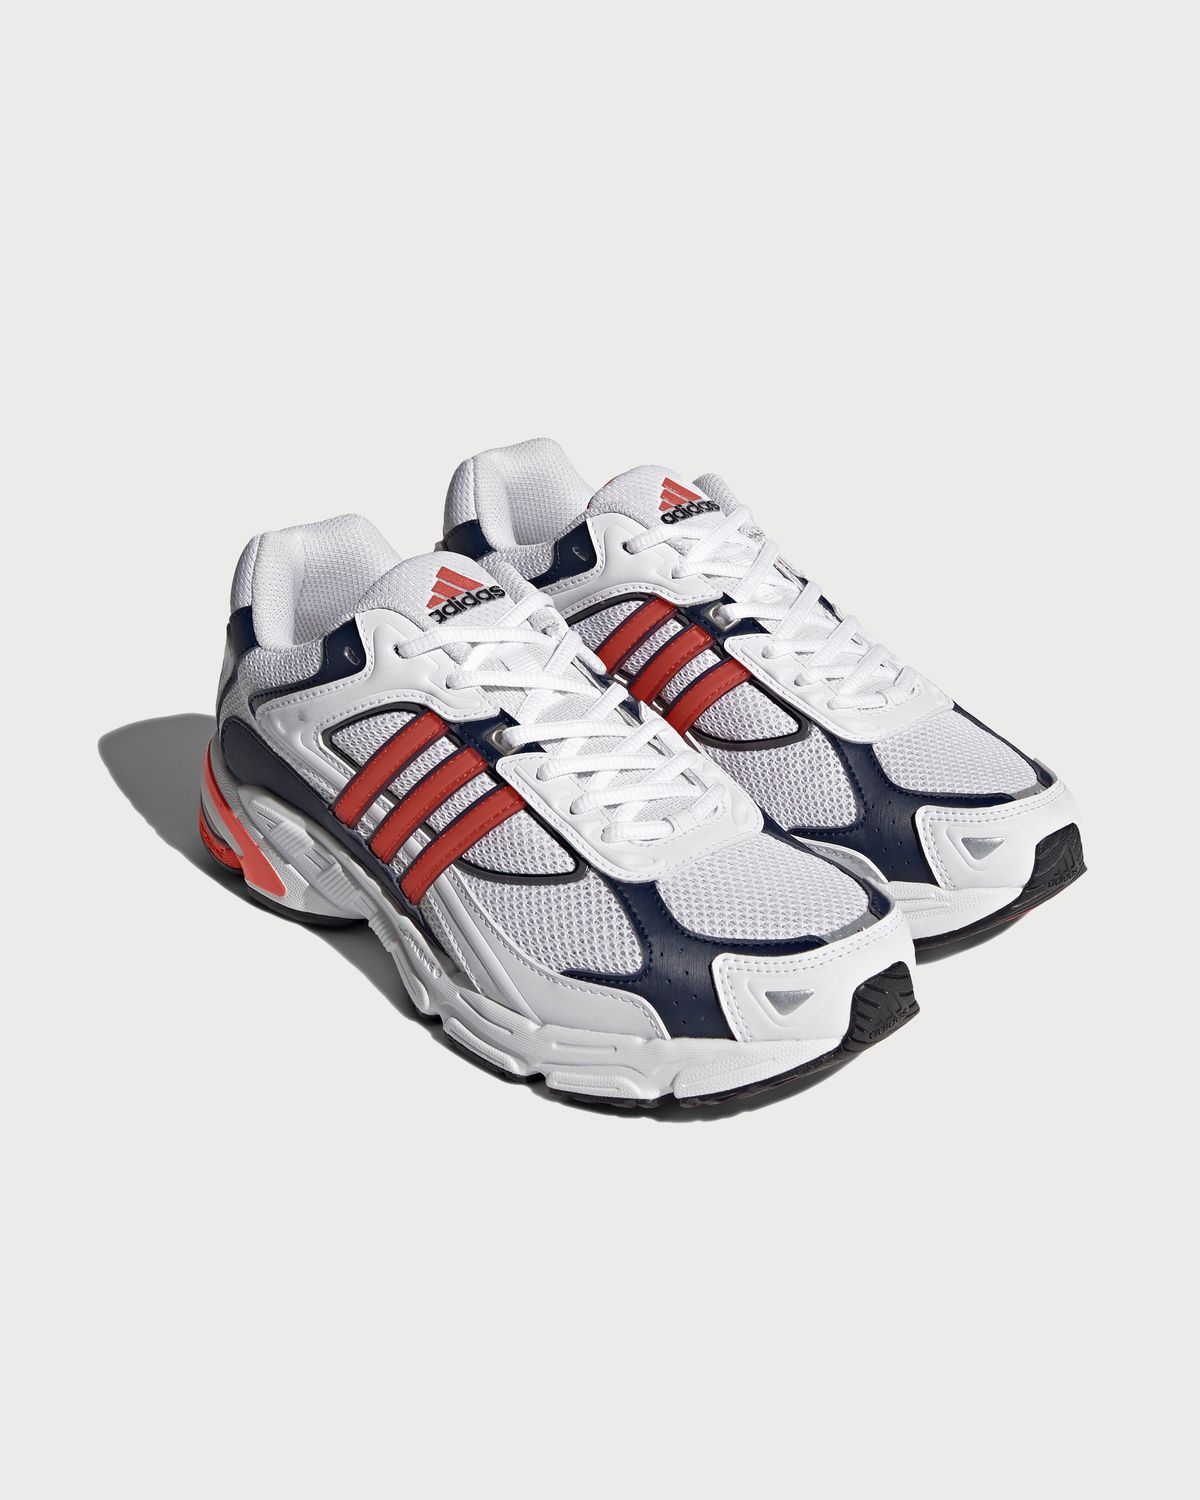 Adidas – Response CL White/Orange - Sneakers - White - Image 2